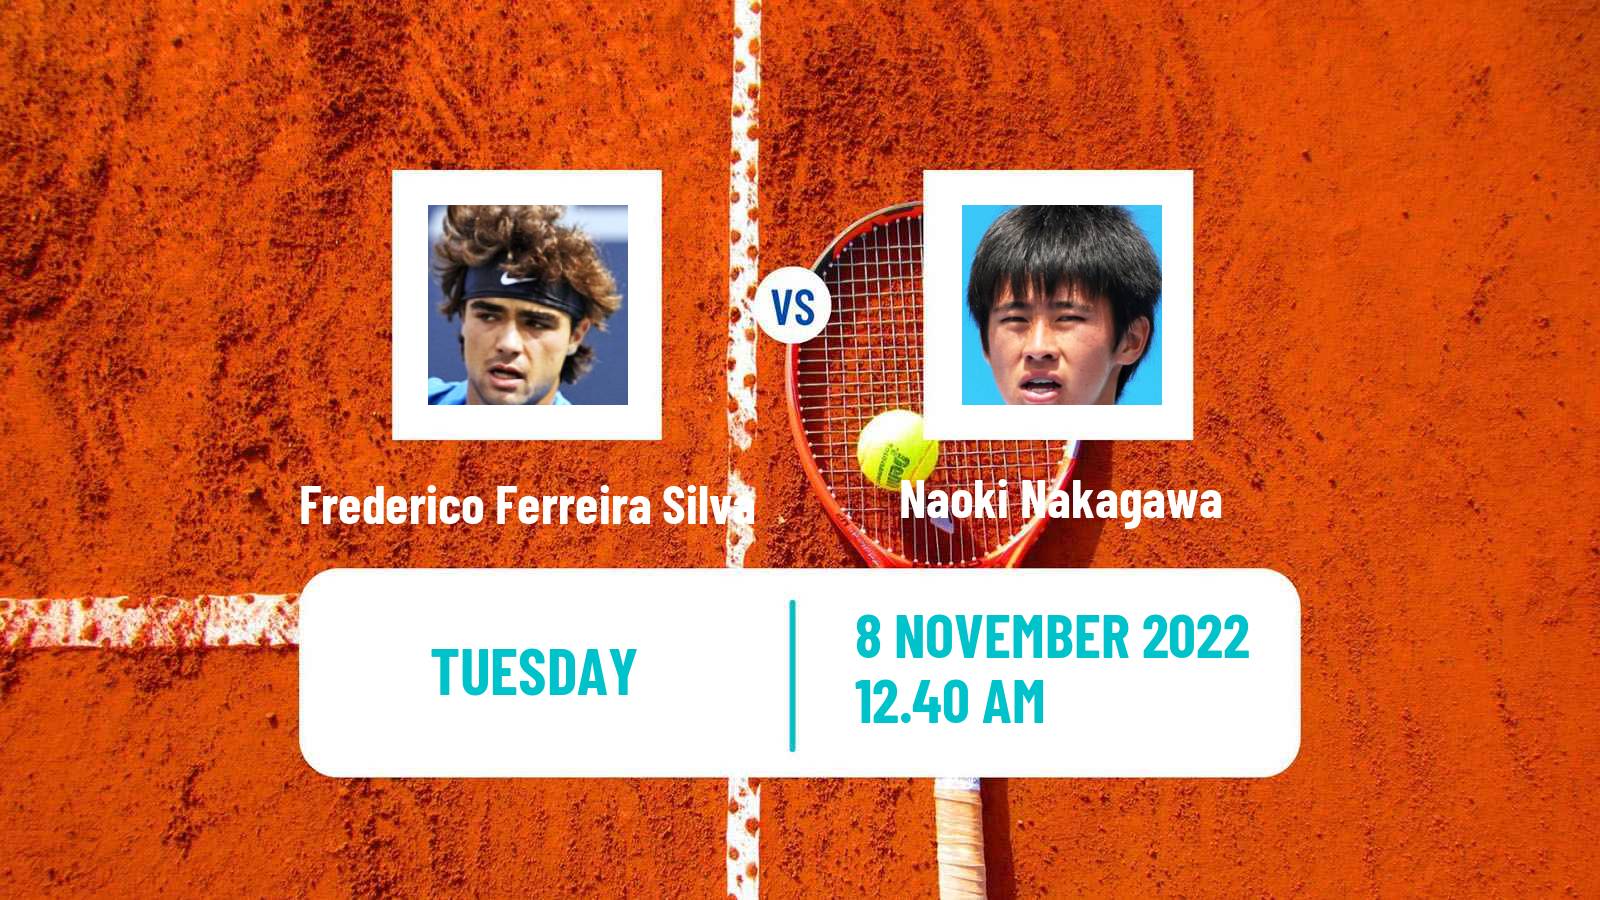 Tennis ATP Challenger Frederico Ferreira Silva - Naoki Nakagawa